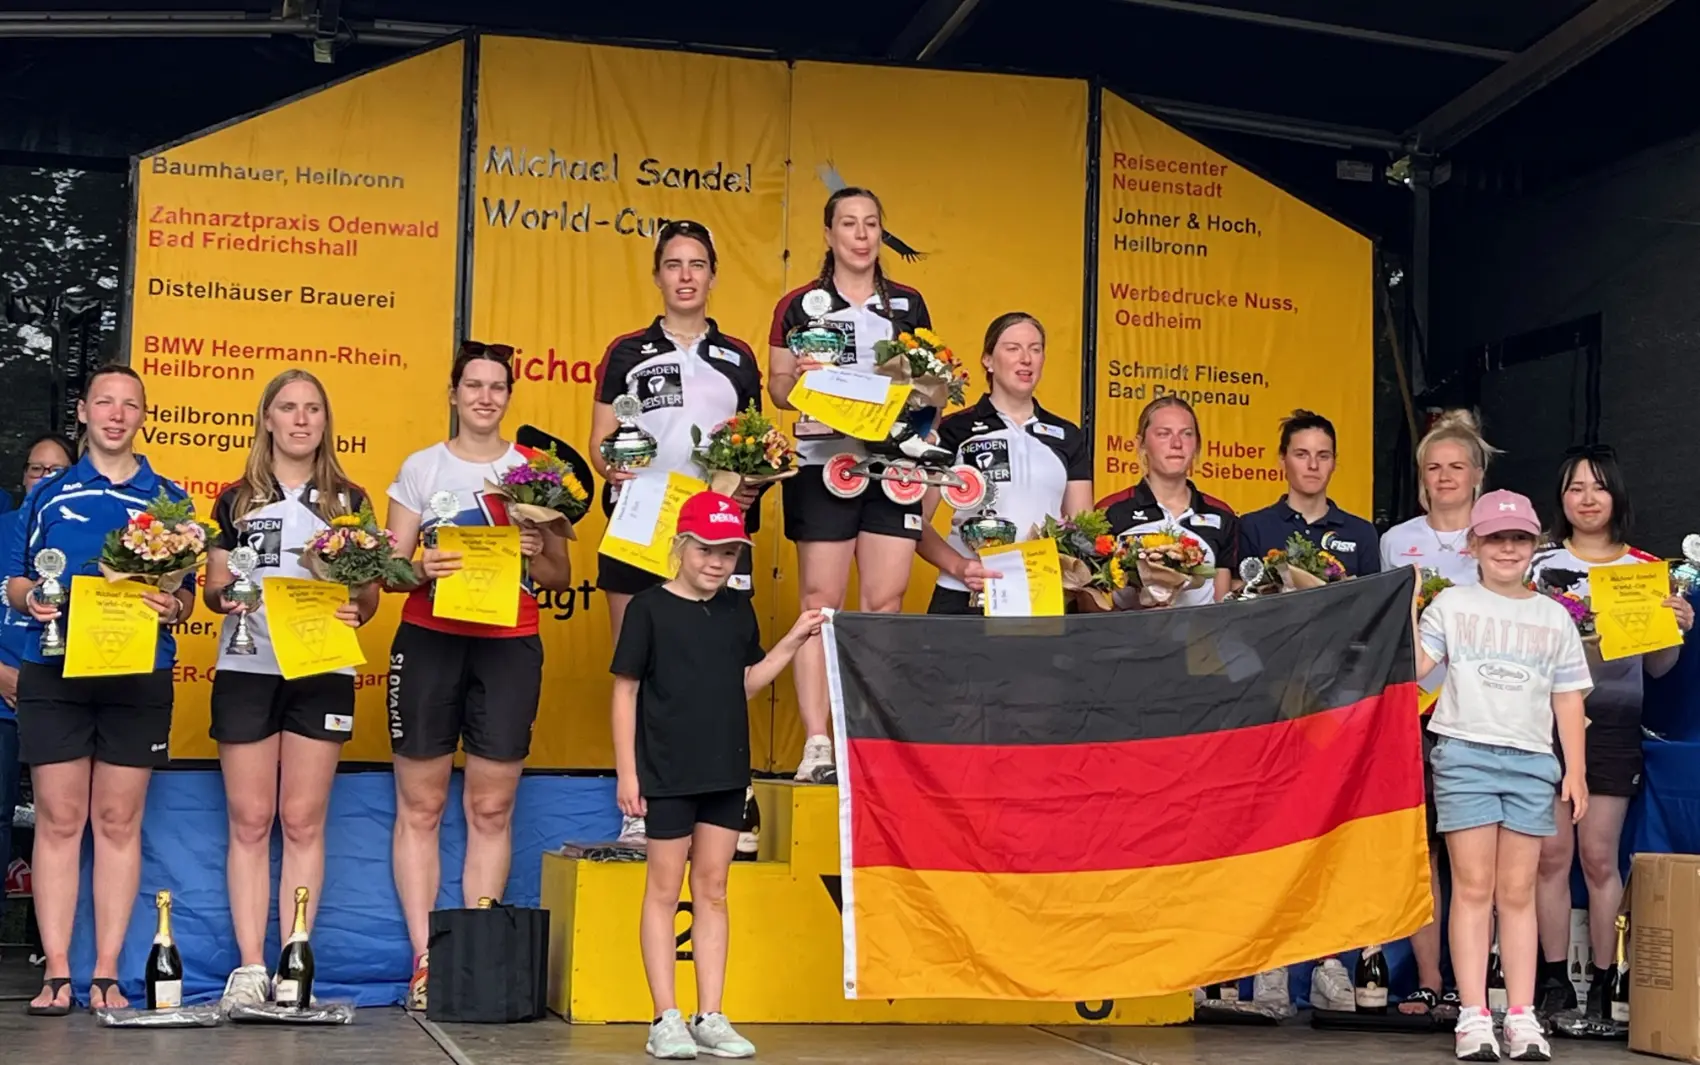 Zurecht durfte sich Claudia Wittmann (rechts neben der Siegerin Mona Heller) über ihren dritten Platz beim Weltcuprennen in Degmarn freuen.